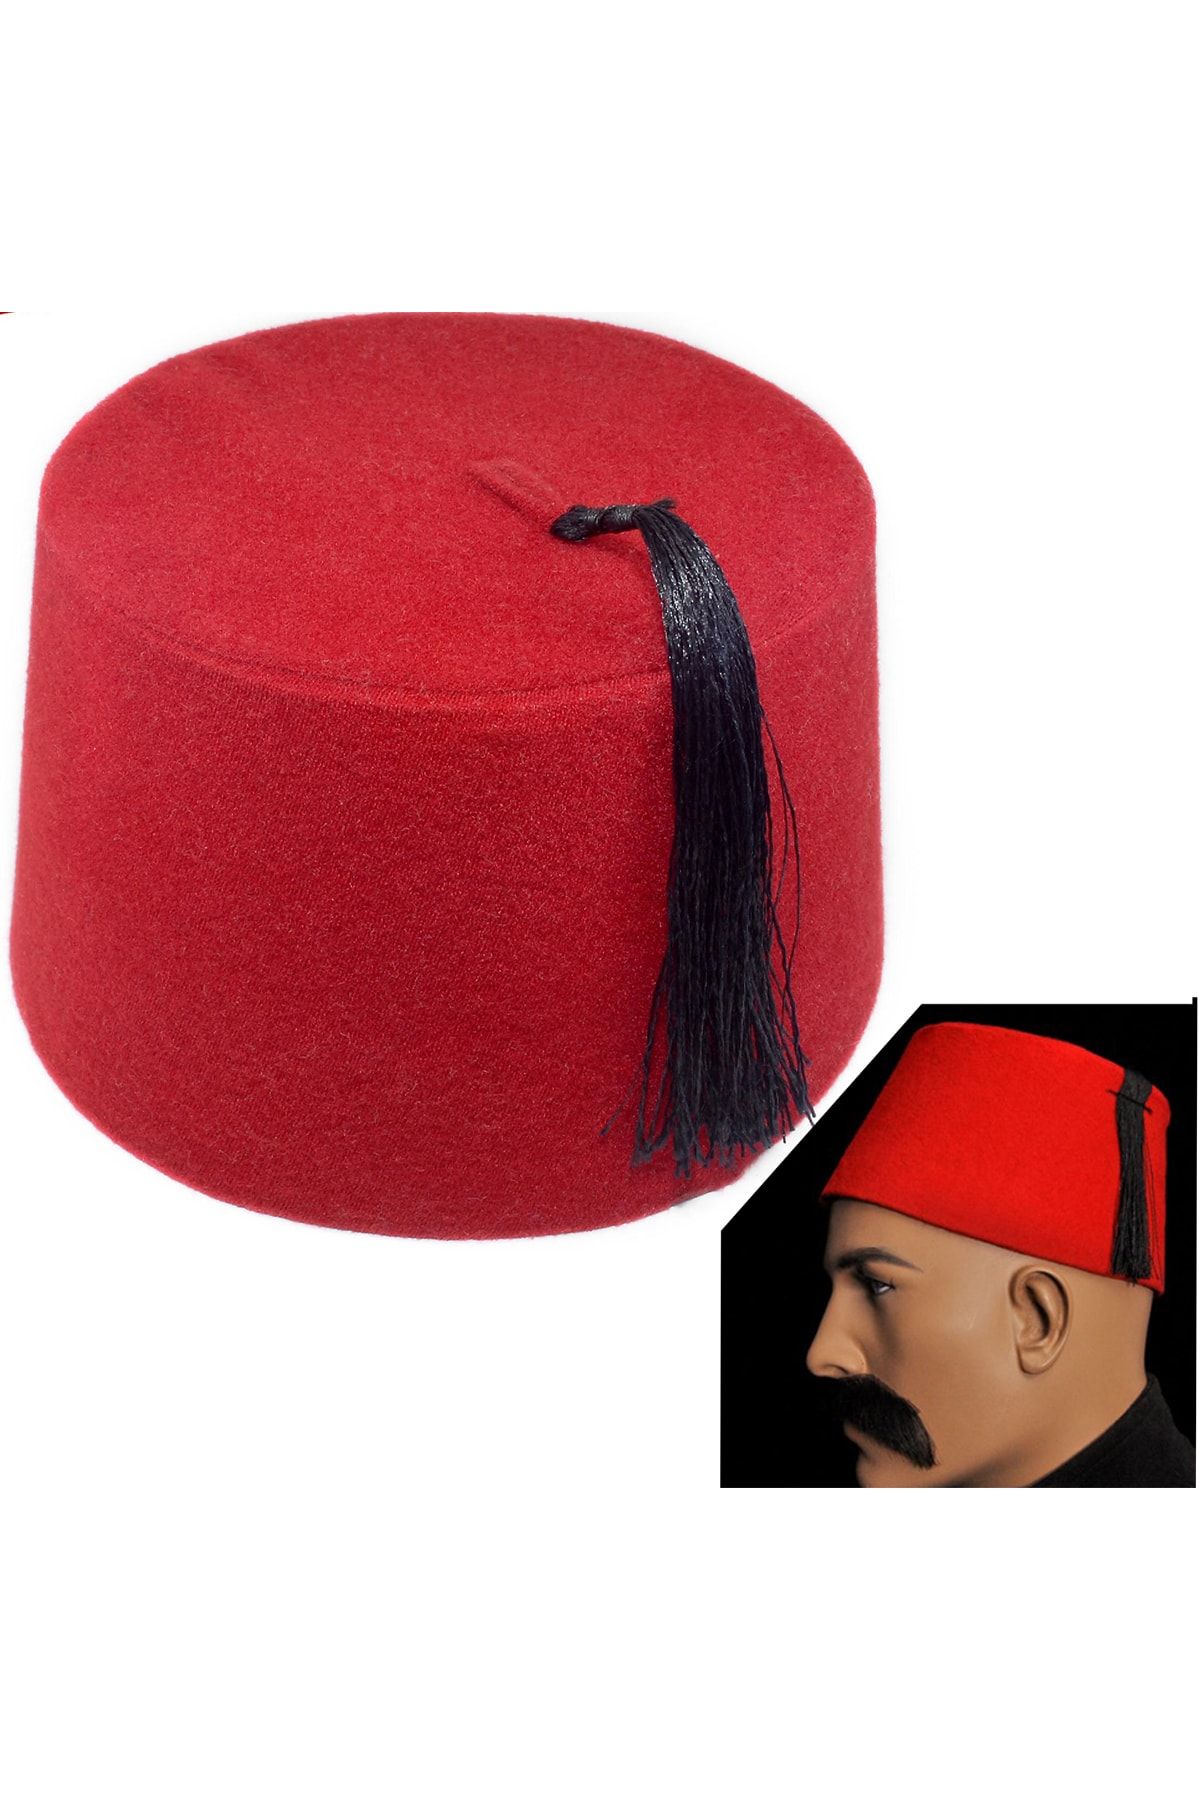 Parti Dolabı 1 Adet Kırmızı Osmanlı Payitaht Fesi Şapkası Erkek Kına Fesleri Dönem Fesi